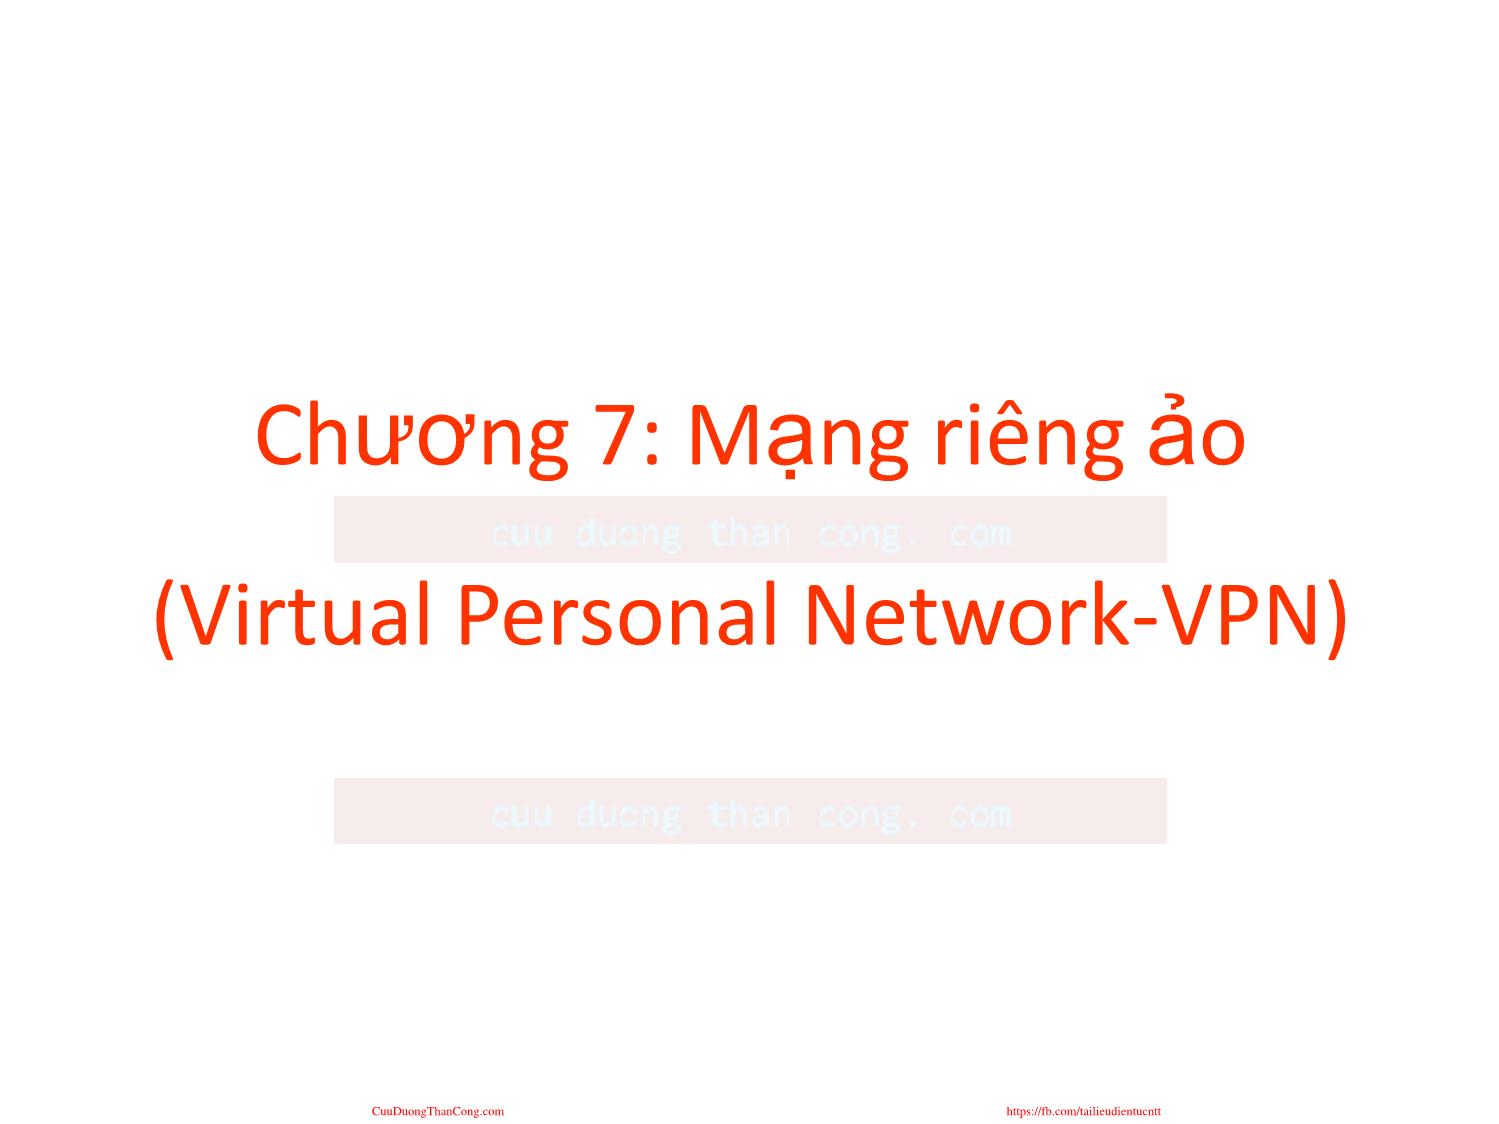 An ninh mạng - Chương 7: Mạng riêng ảo (Virtual Personal Network - VPN) trang 1